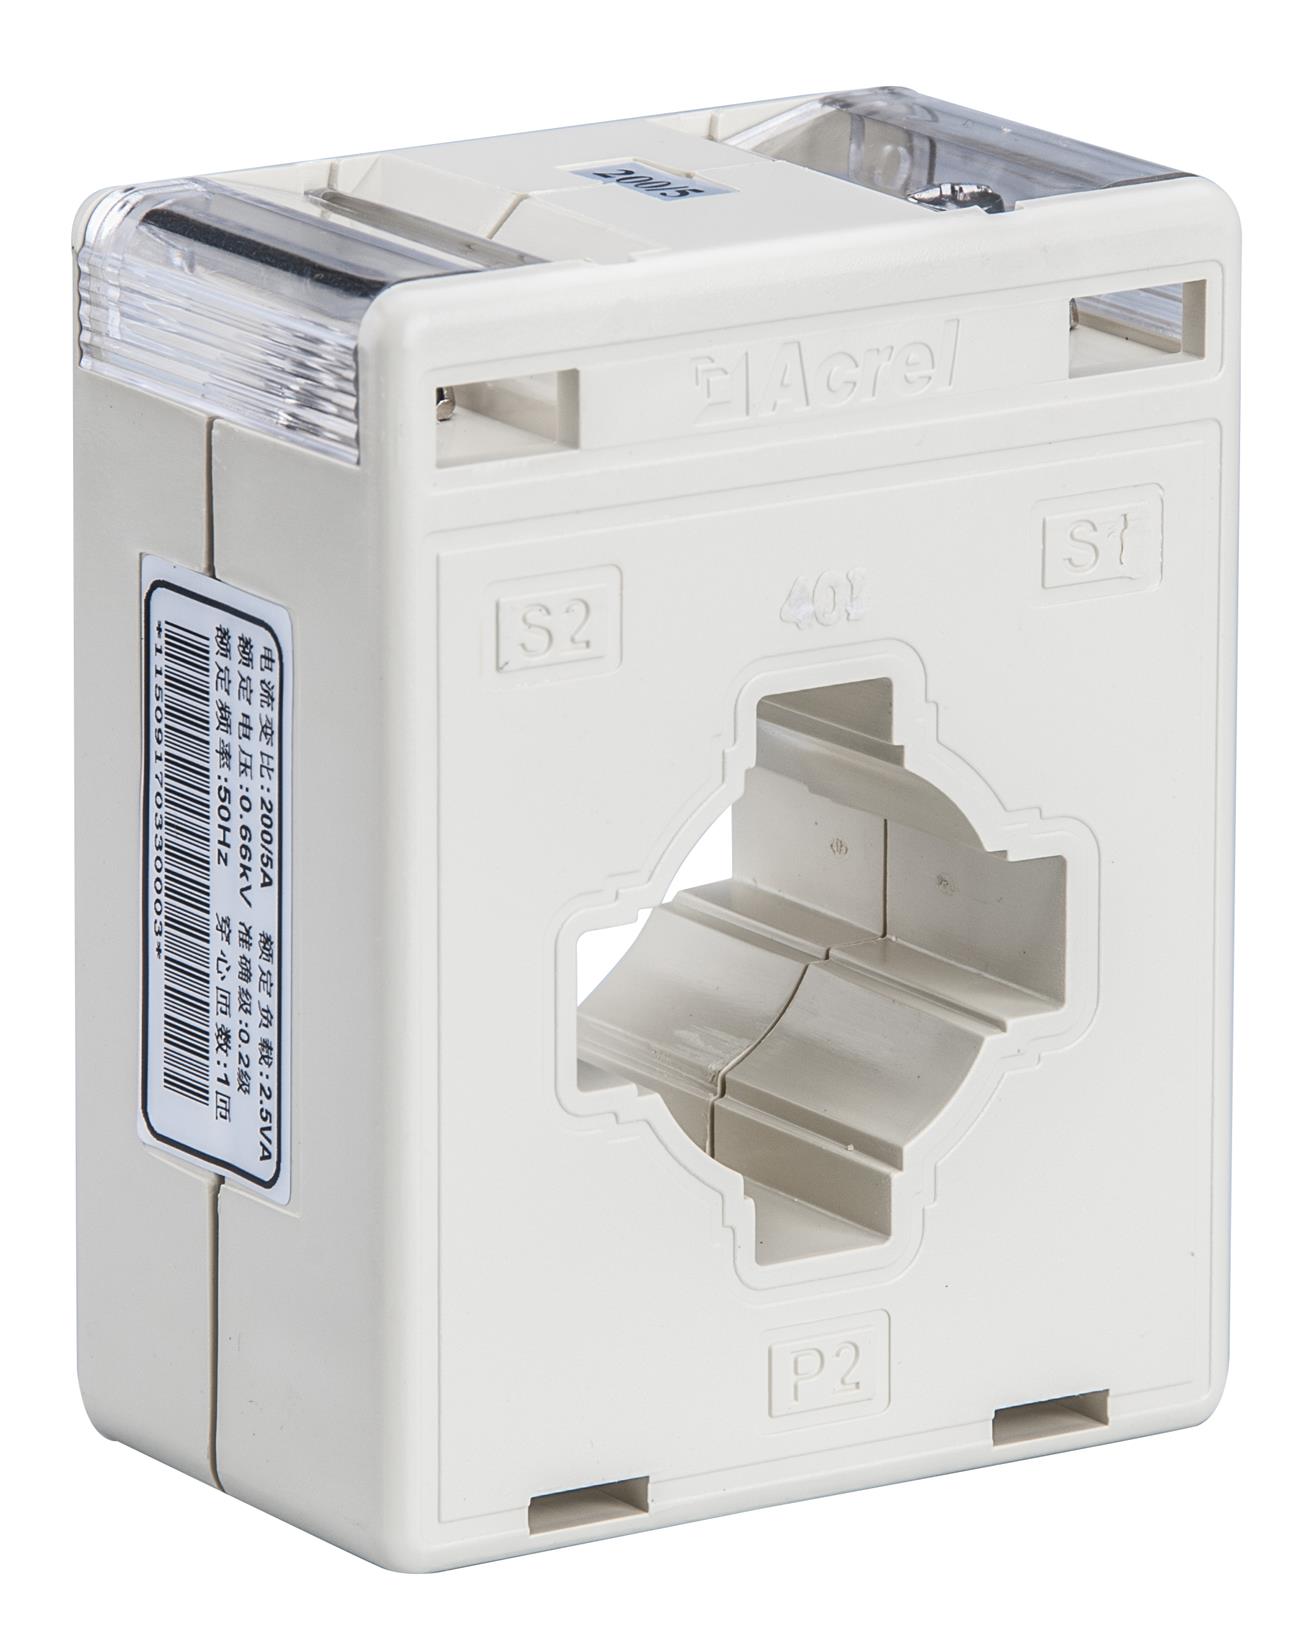 DLT645规约三相电能表-体积轻巧 安装方便